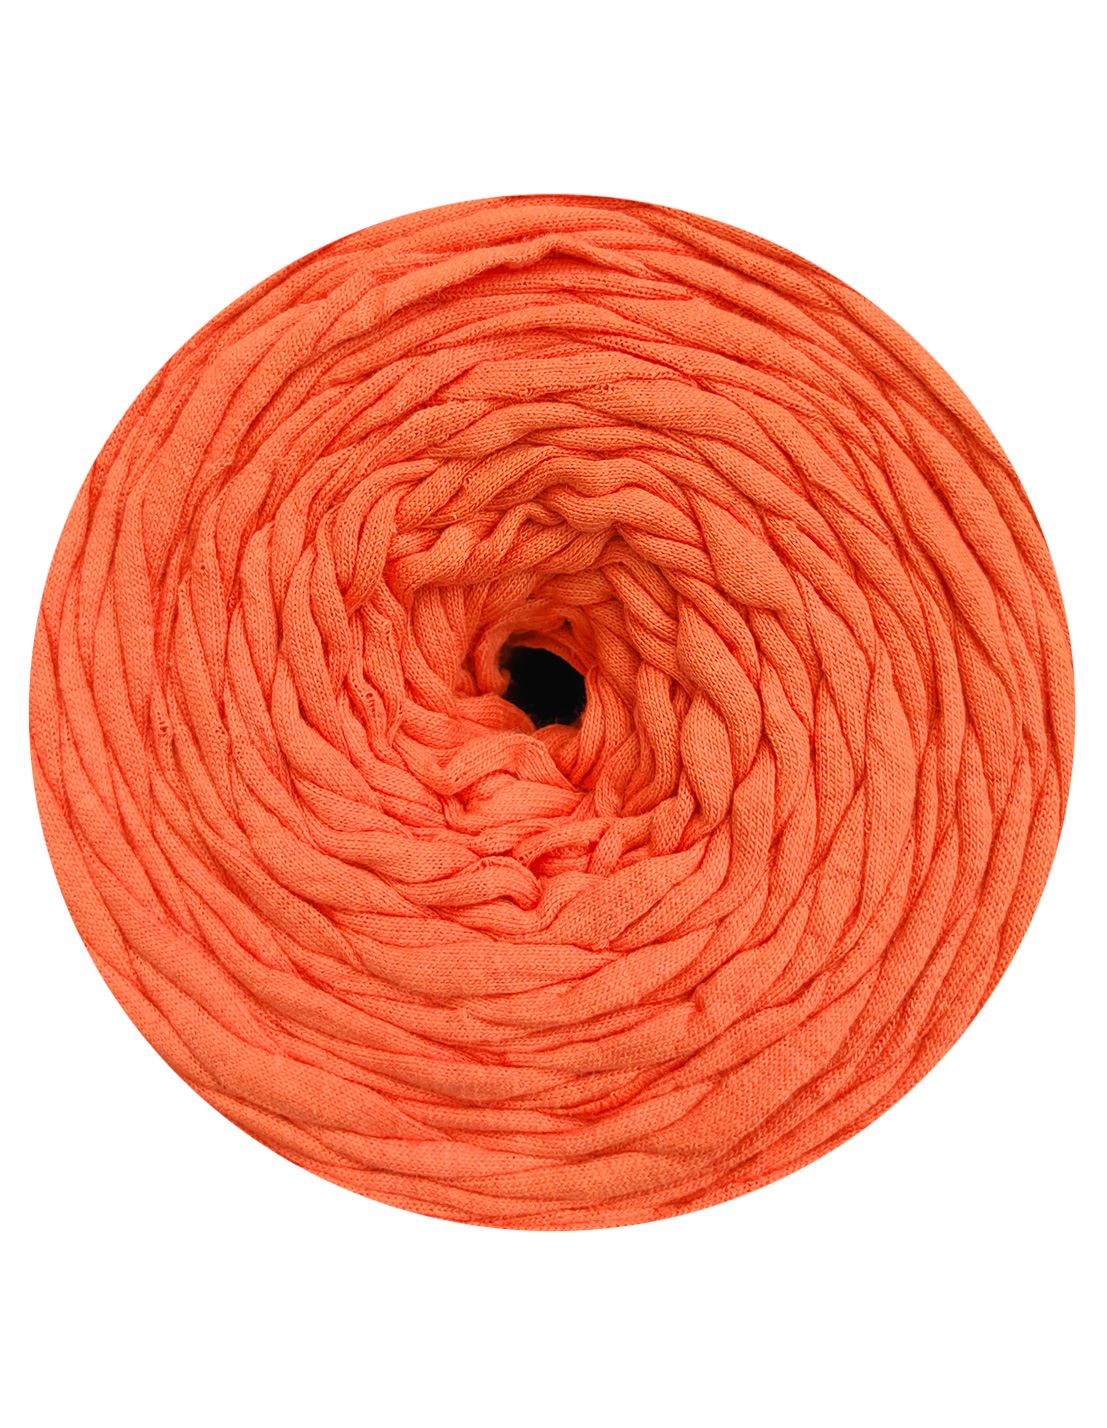 Sunrise orange t-shirt yarn by Rescue Yarn (100-120m)